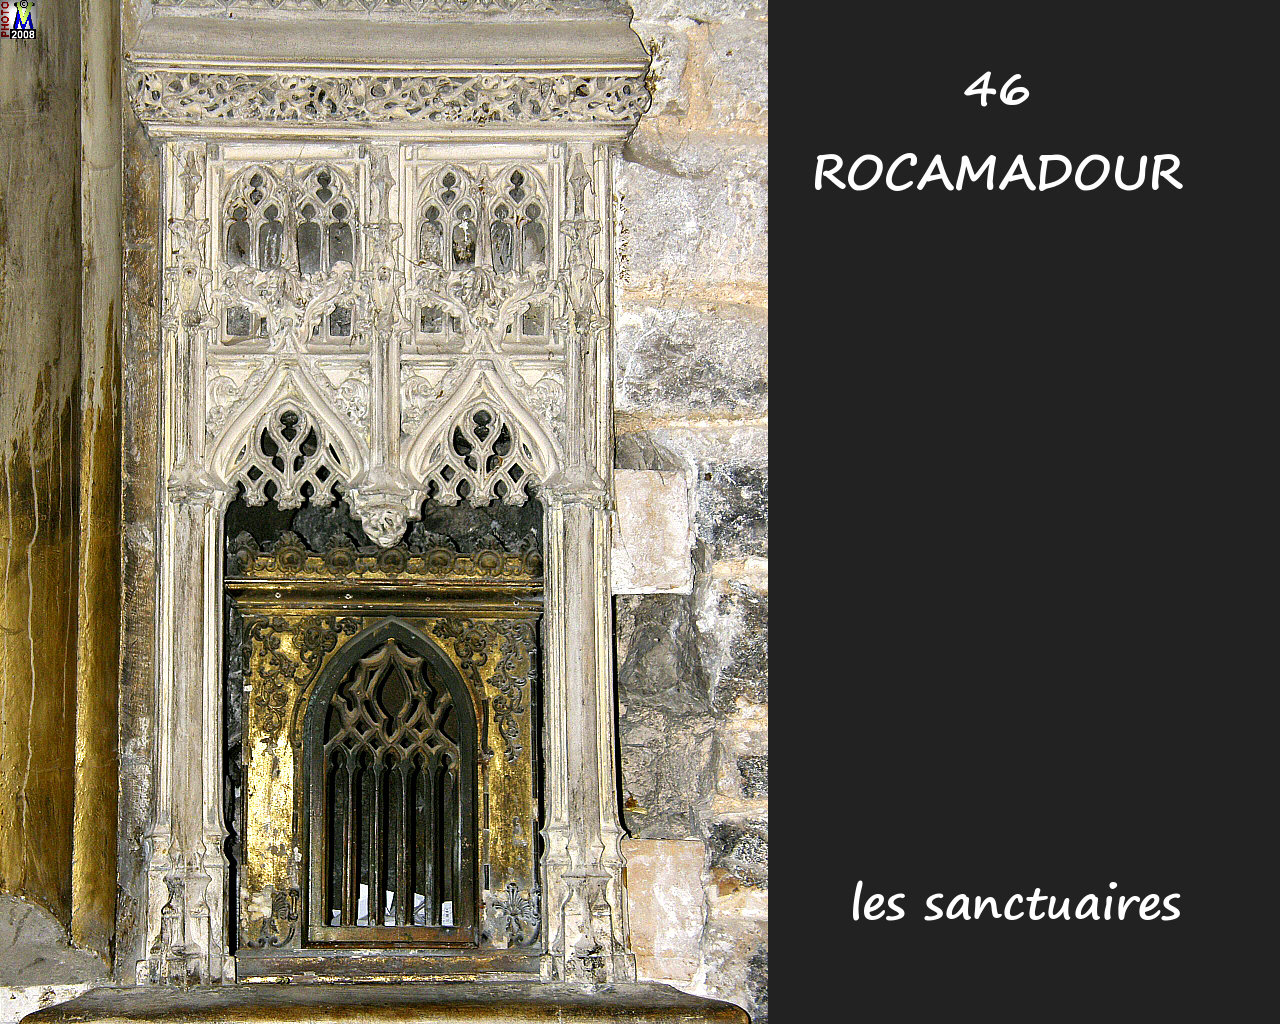 46ROCAMADOUR_sanctuaires_622.jpg